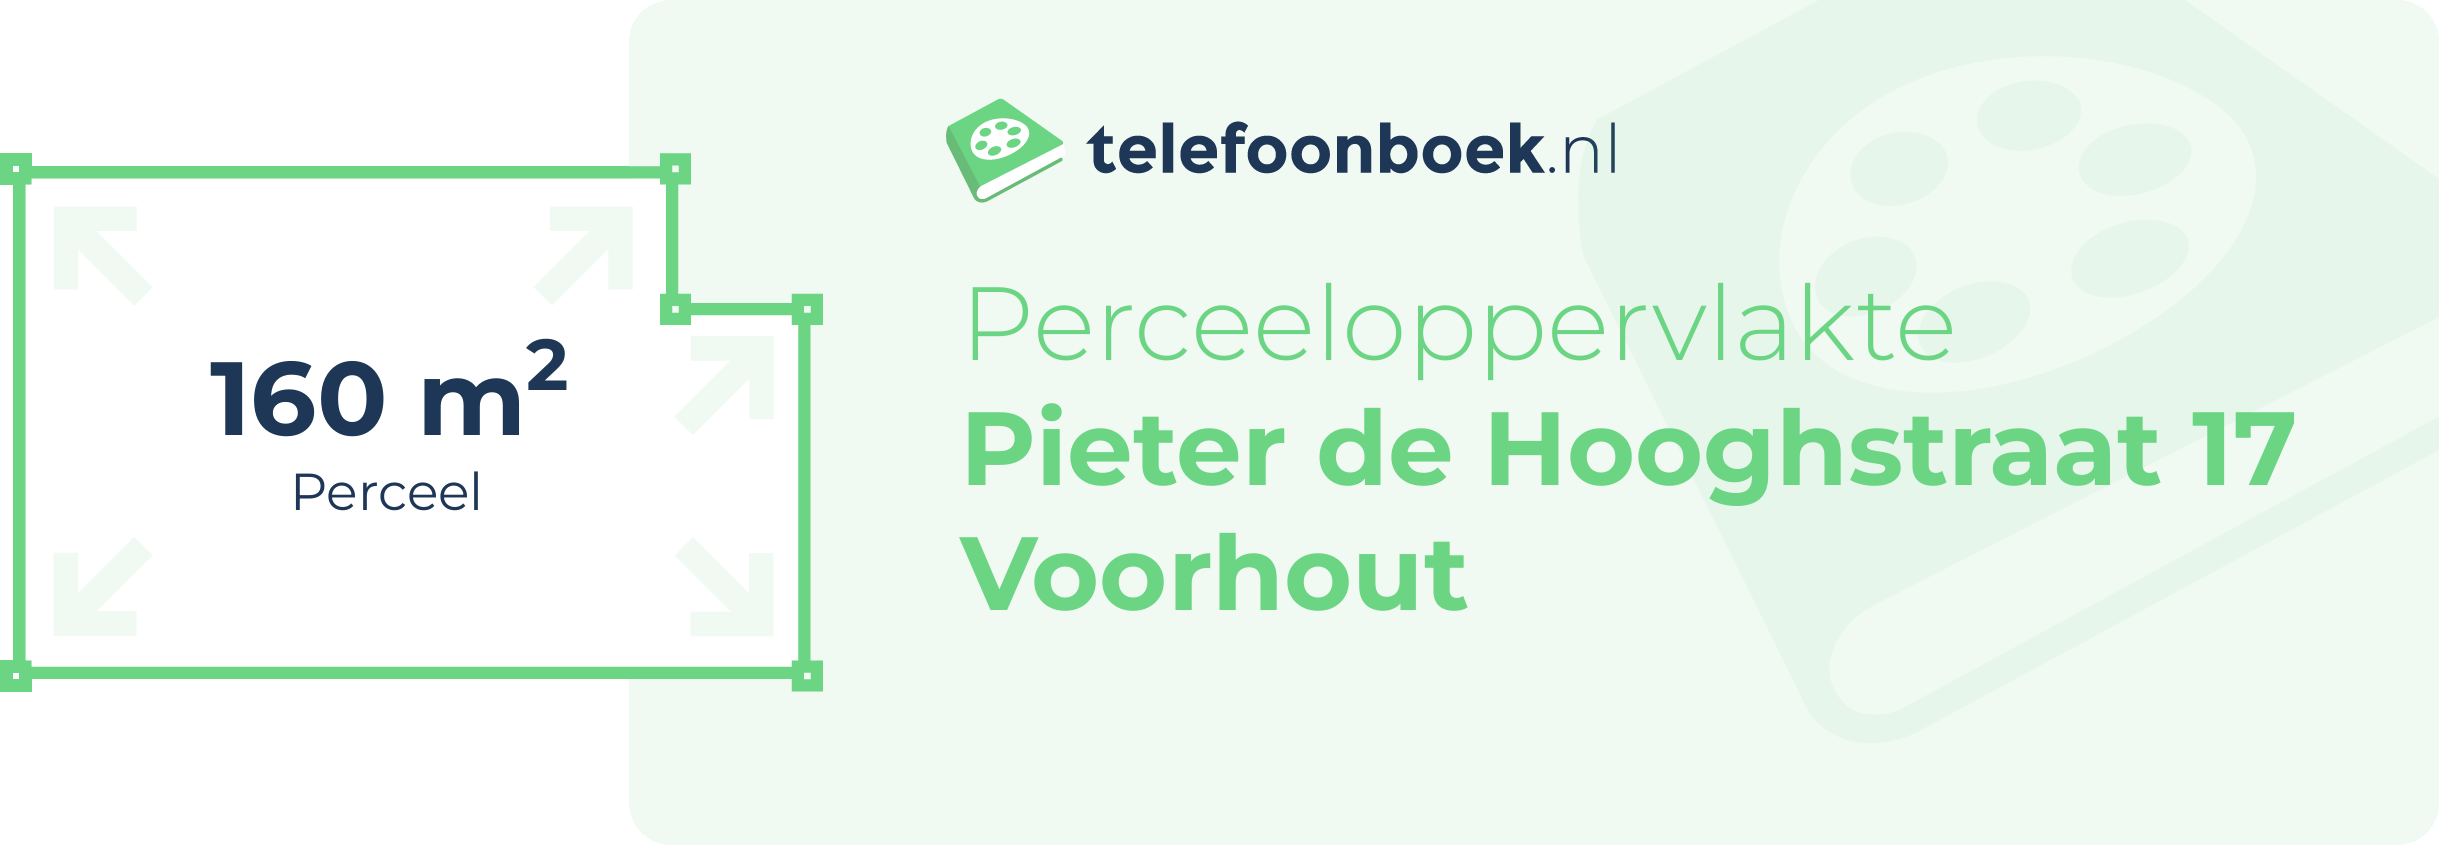 Perceeloppervlakte Pieter De Hooghstraat 17 Voorhout